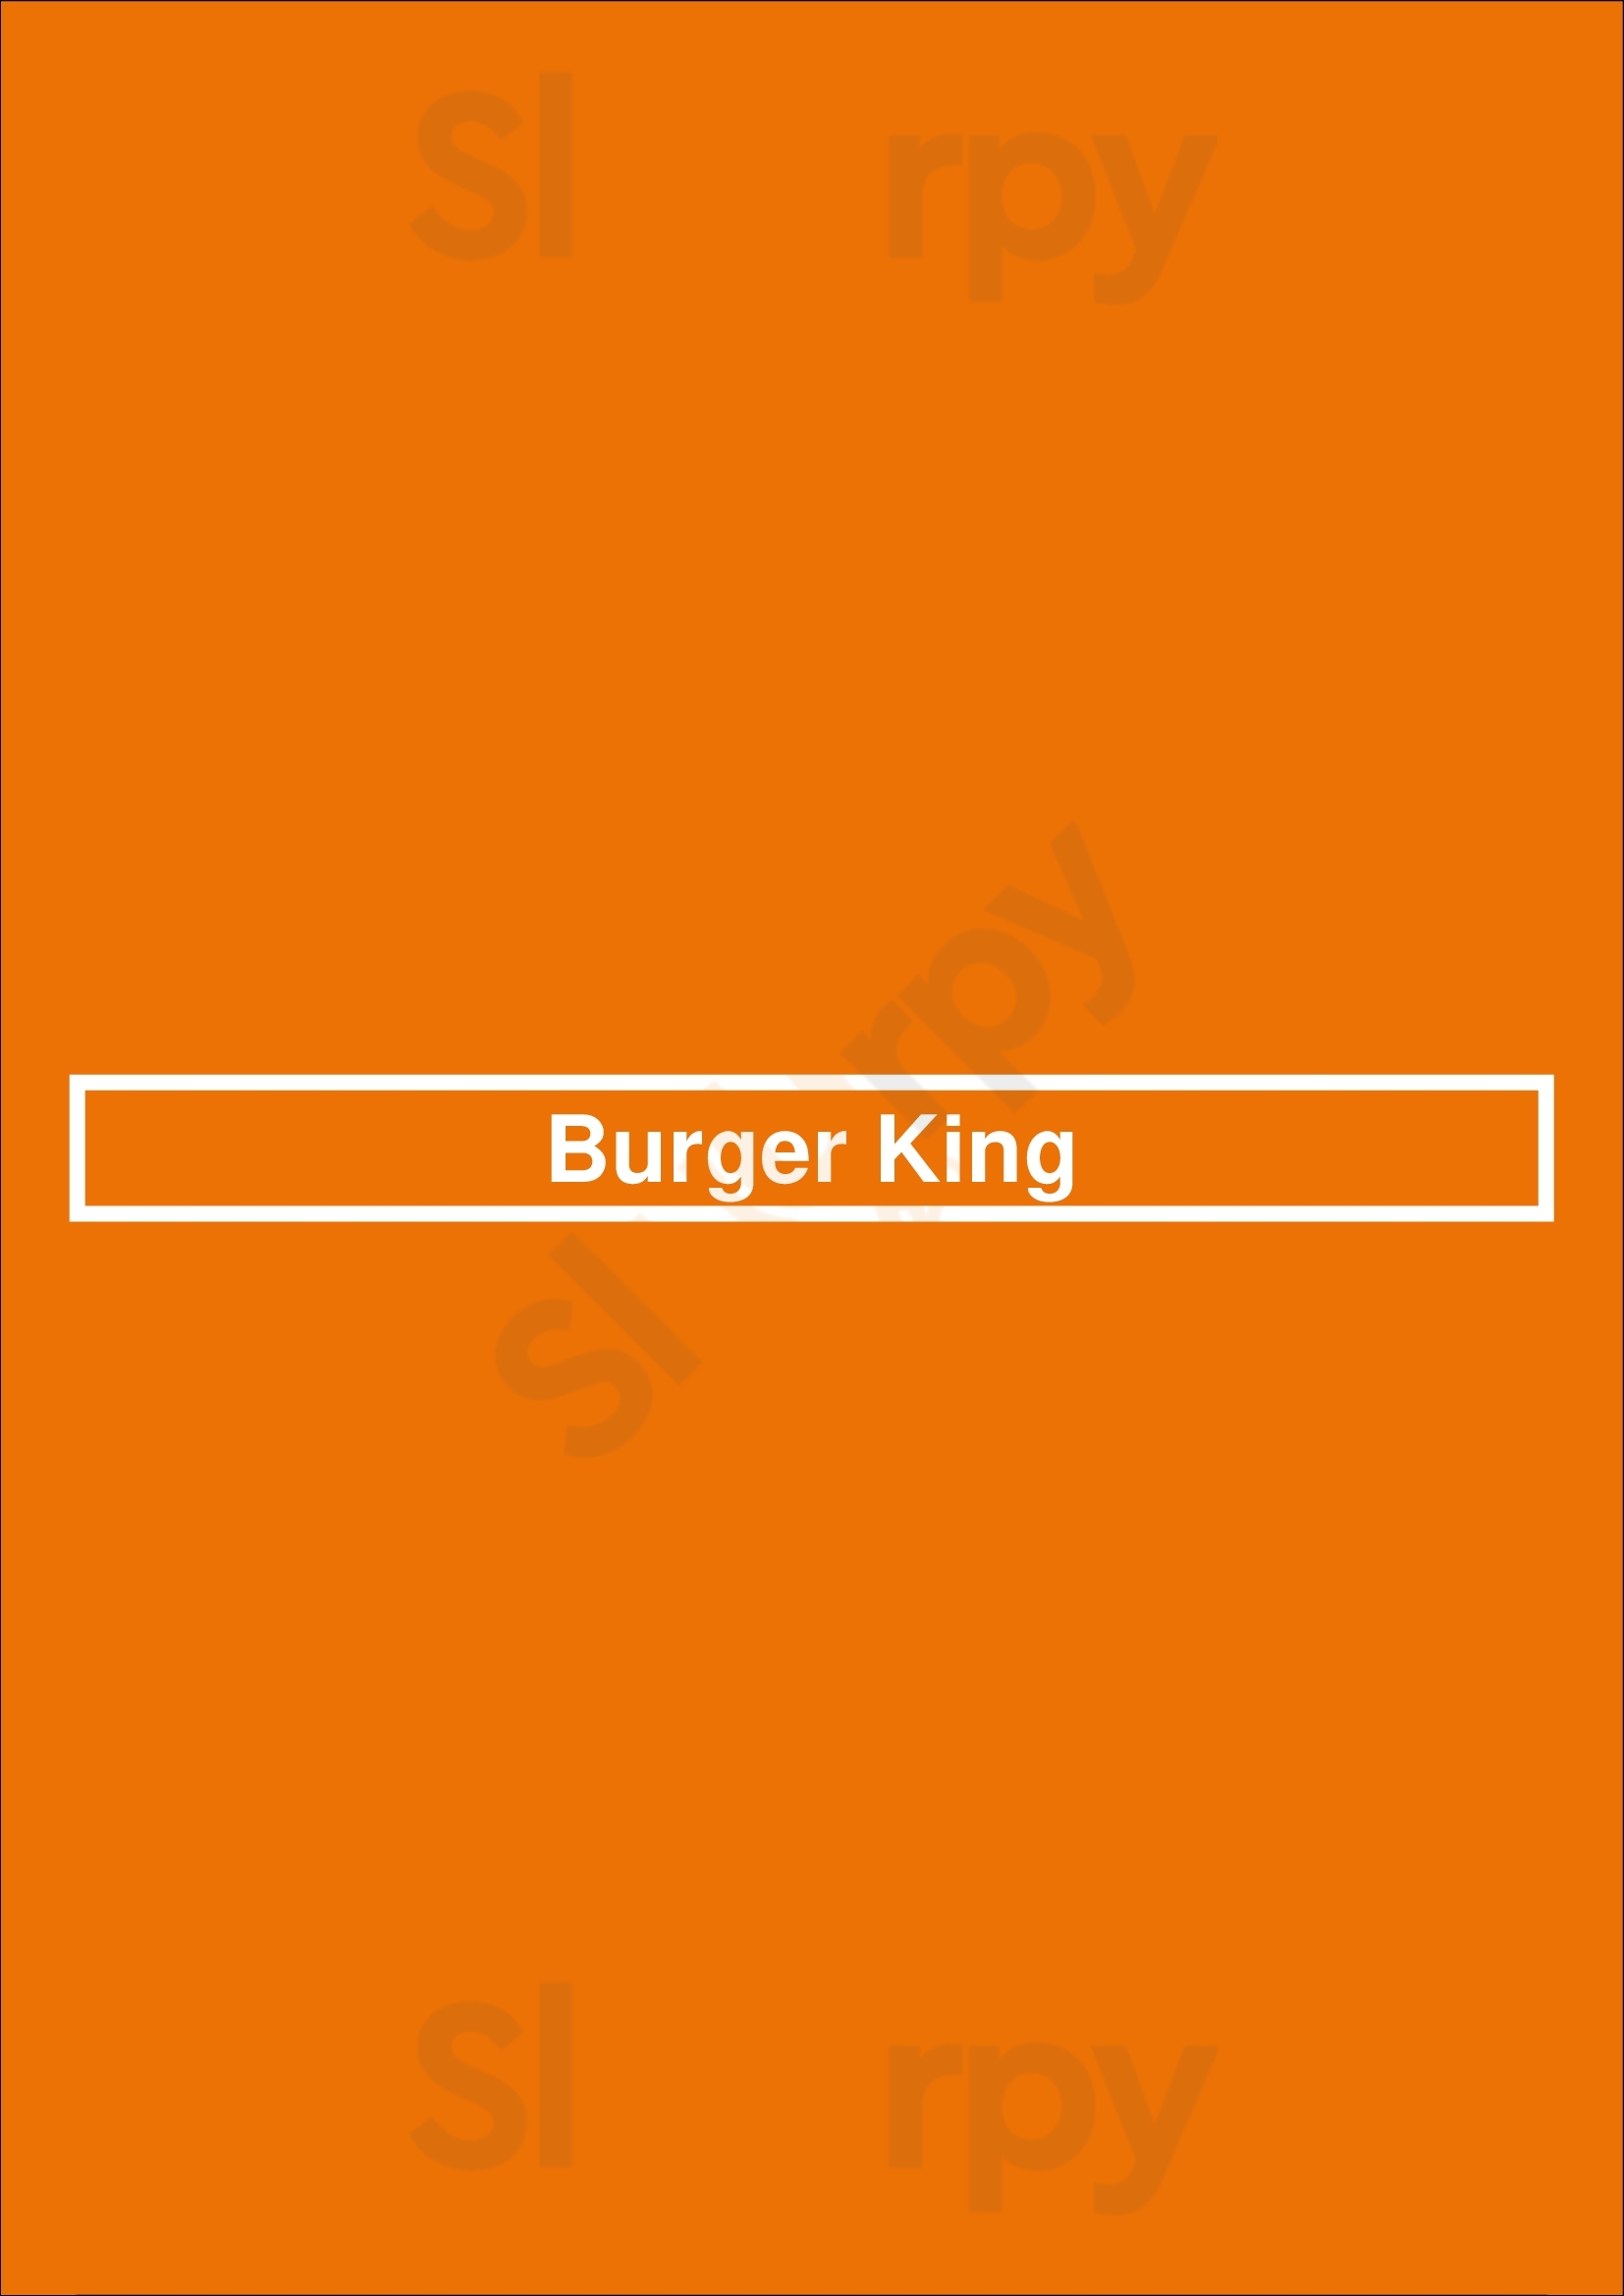 Burger King Torrance Menu - 1